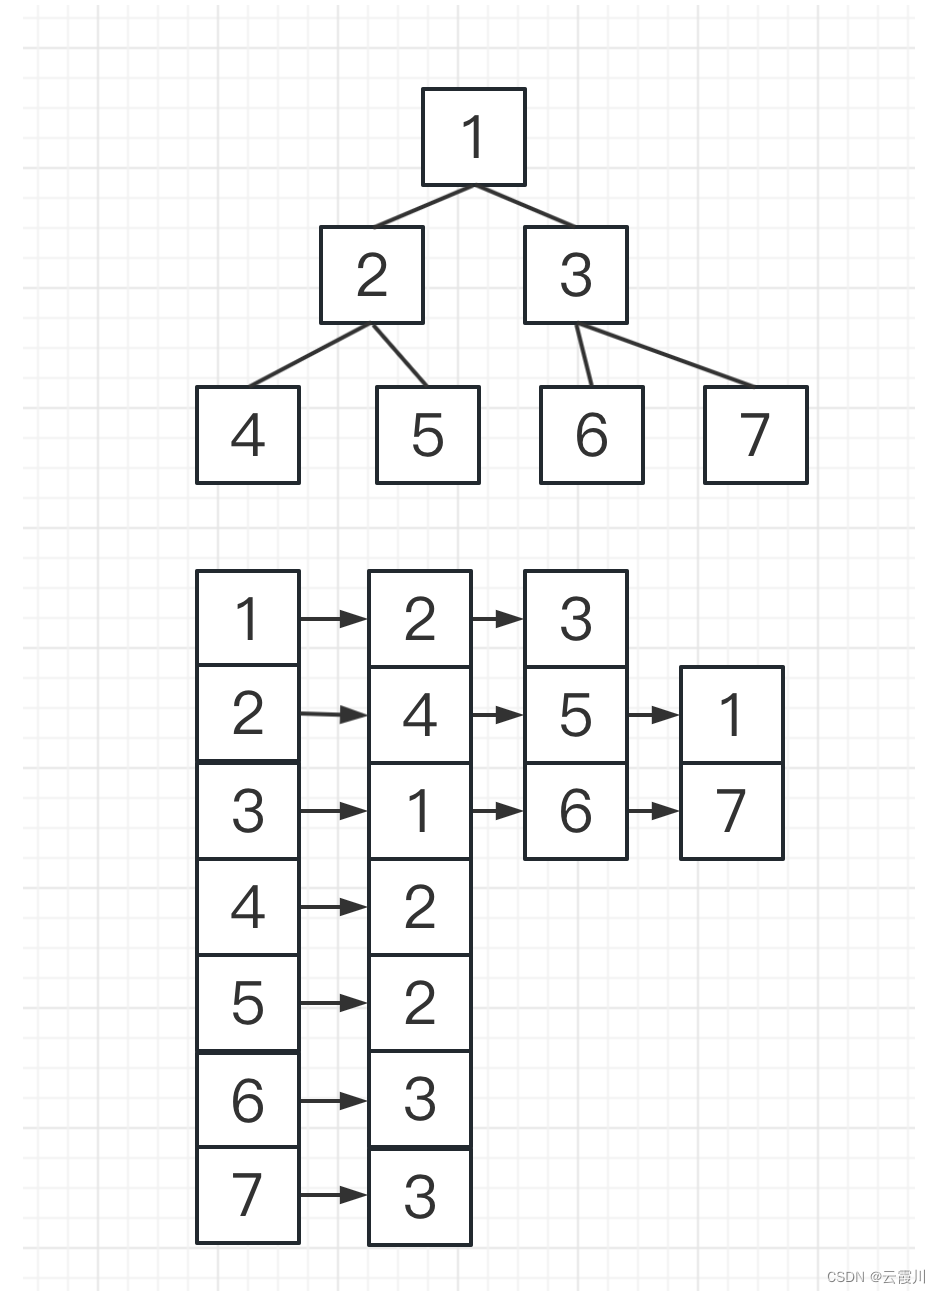 树与图的存储-邻接表与邻接矩阵-深度广度遍历